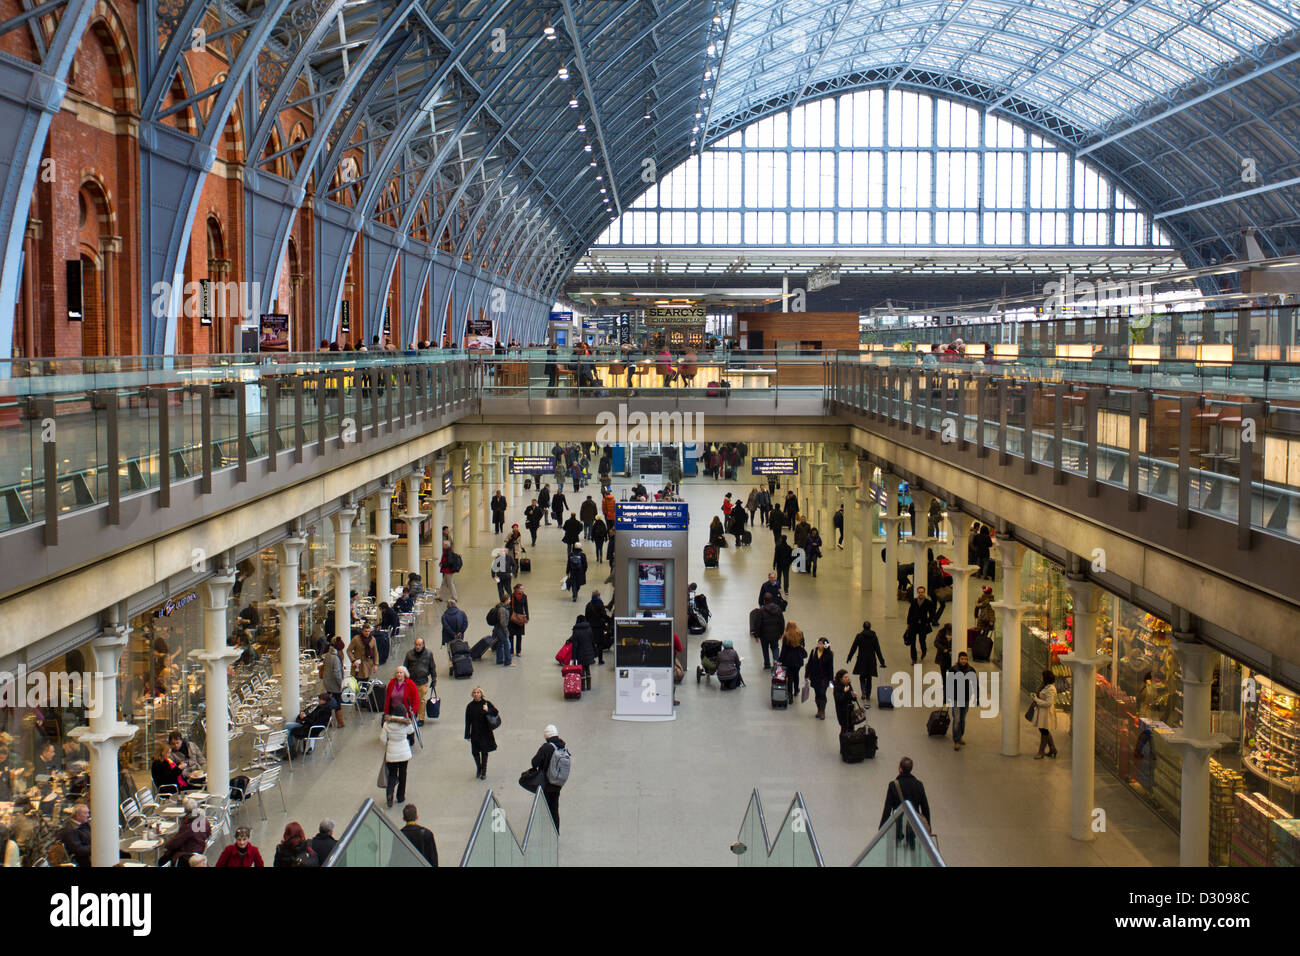 St Pancreas estación ferroviaria internacional en Londres. Foto de stock